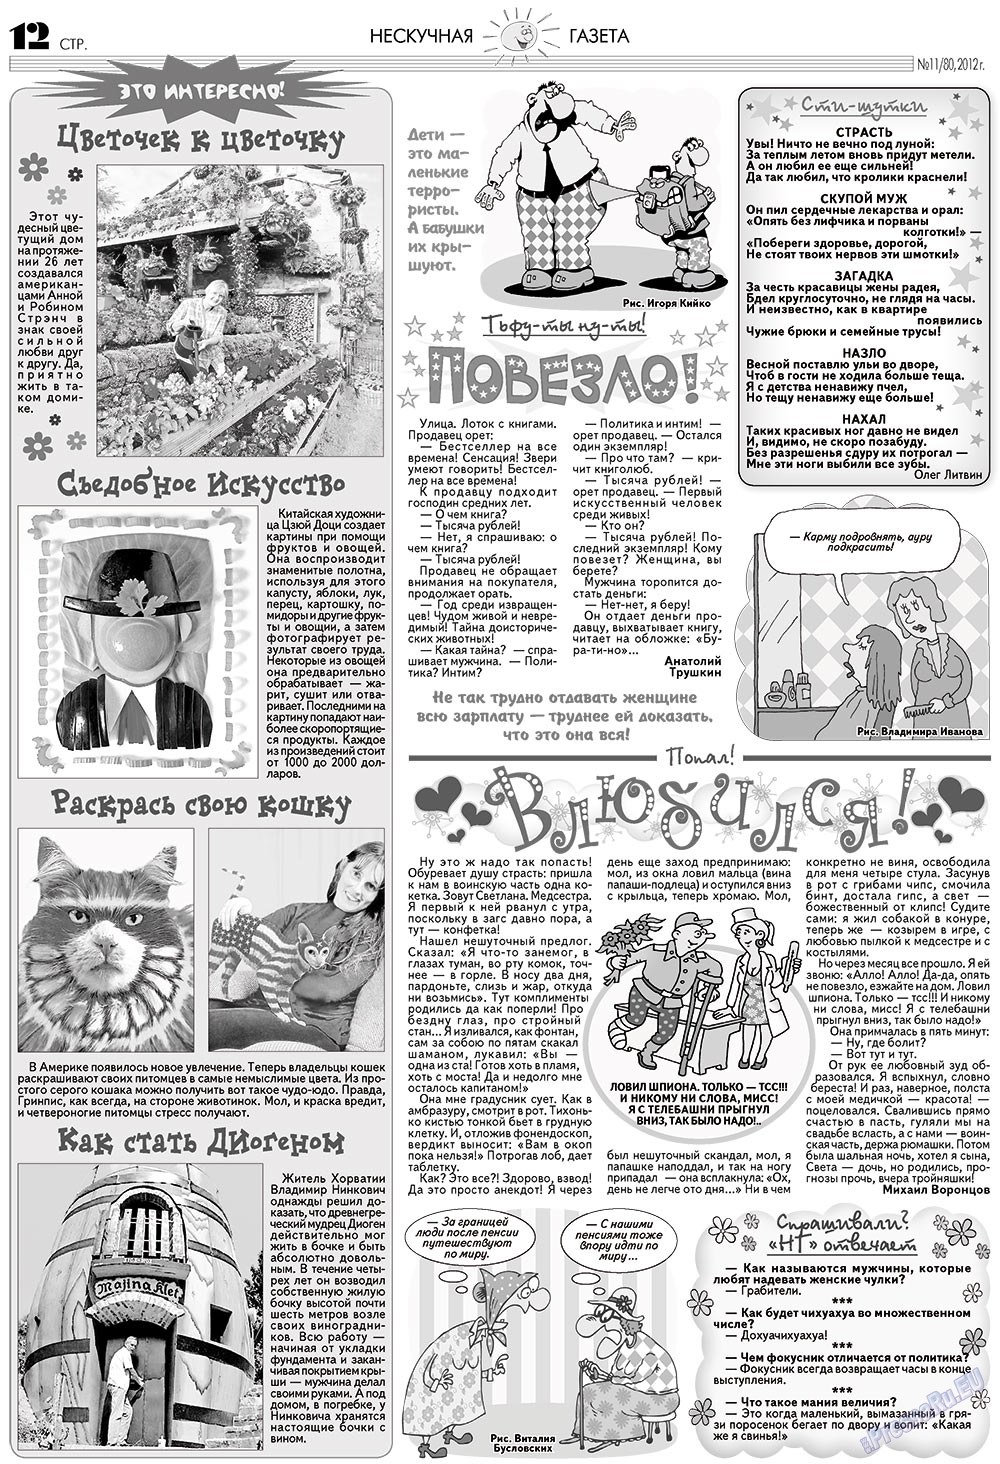 Нескучная газета (журнал). 2012 год, номер 11, стр. 12